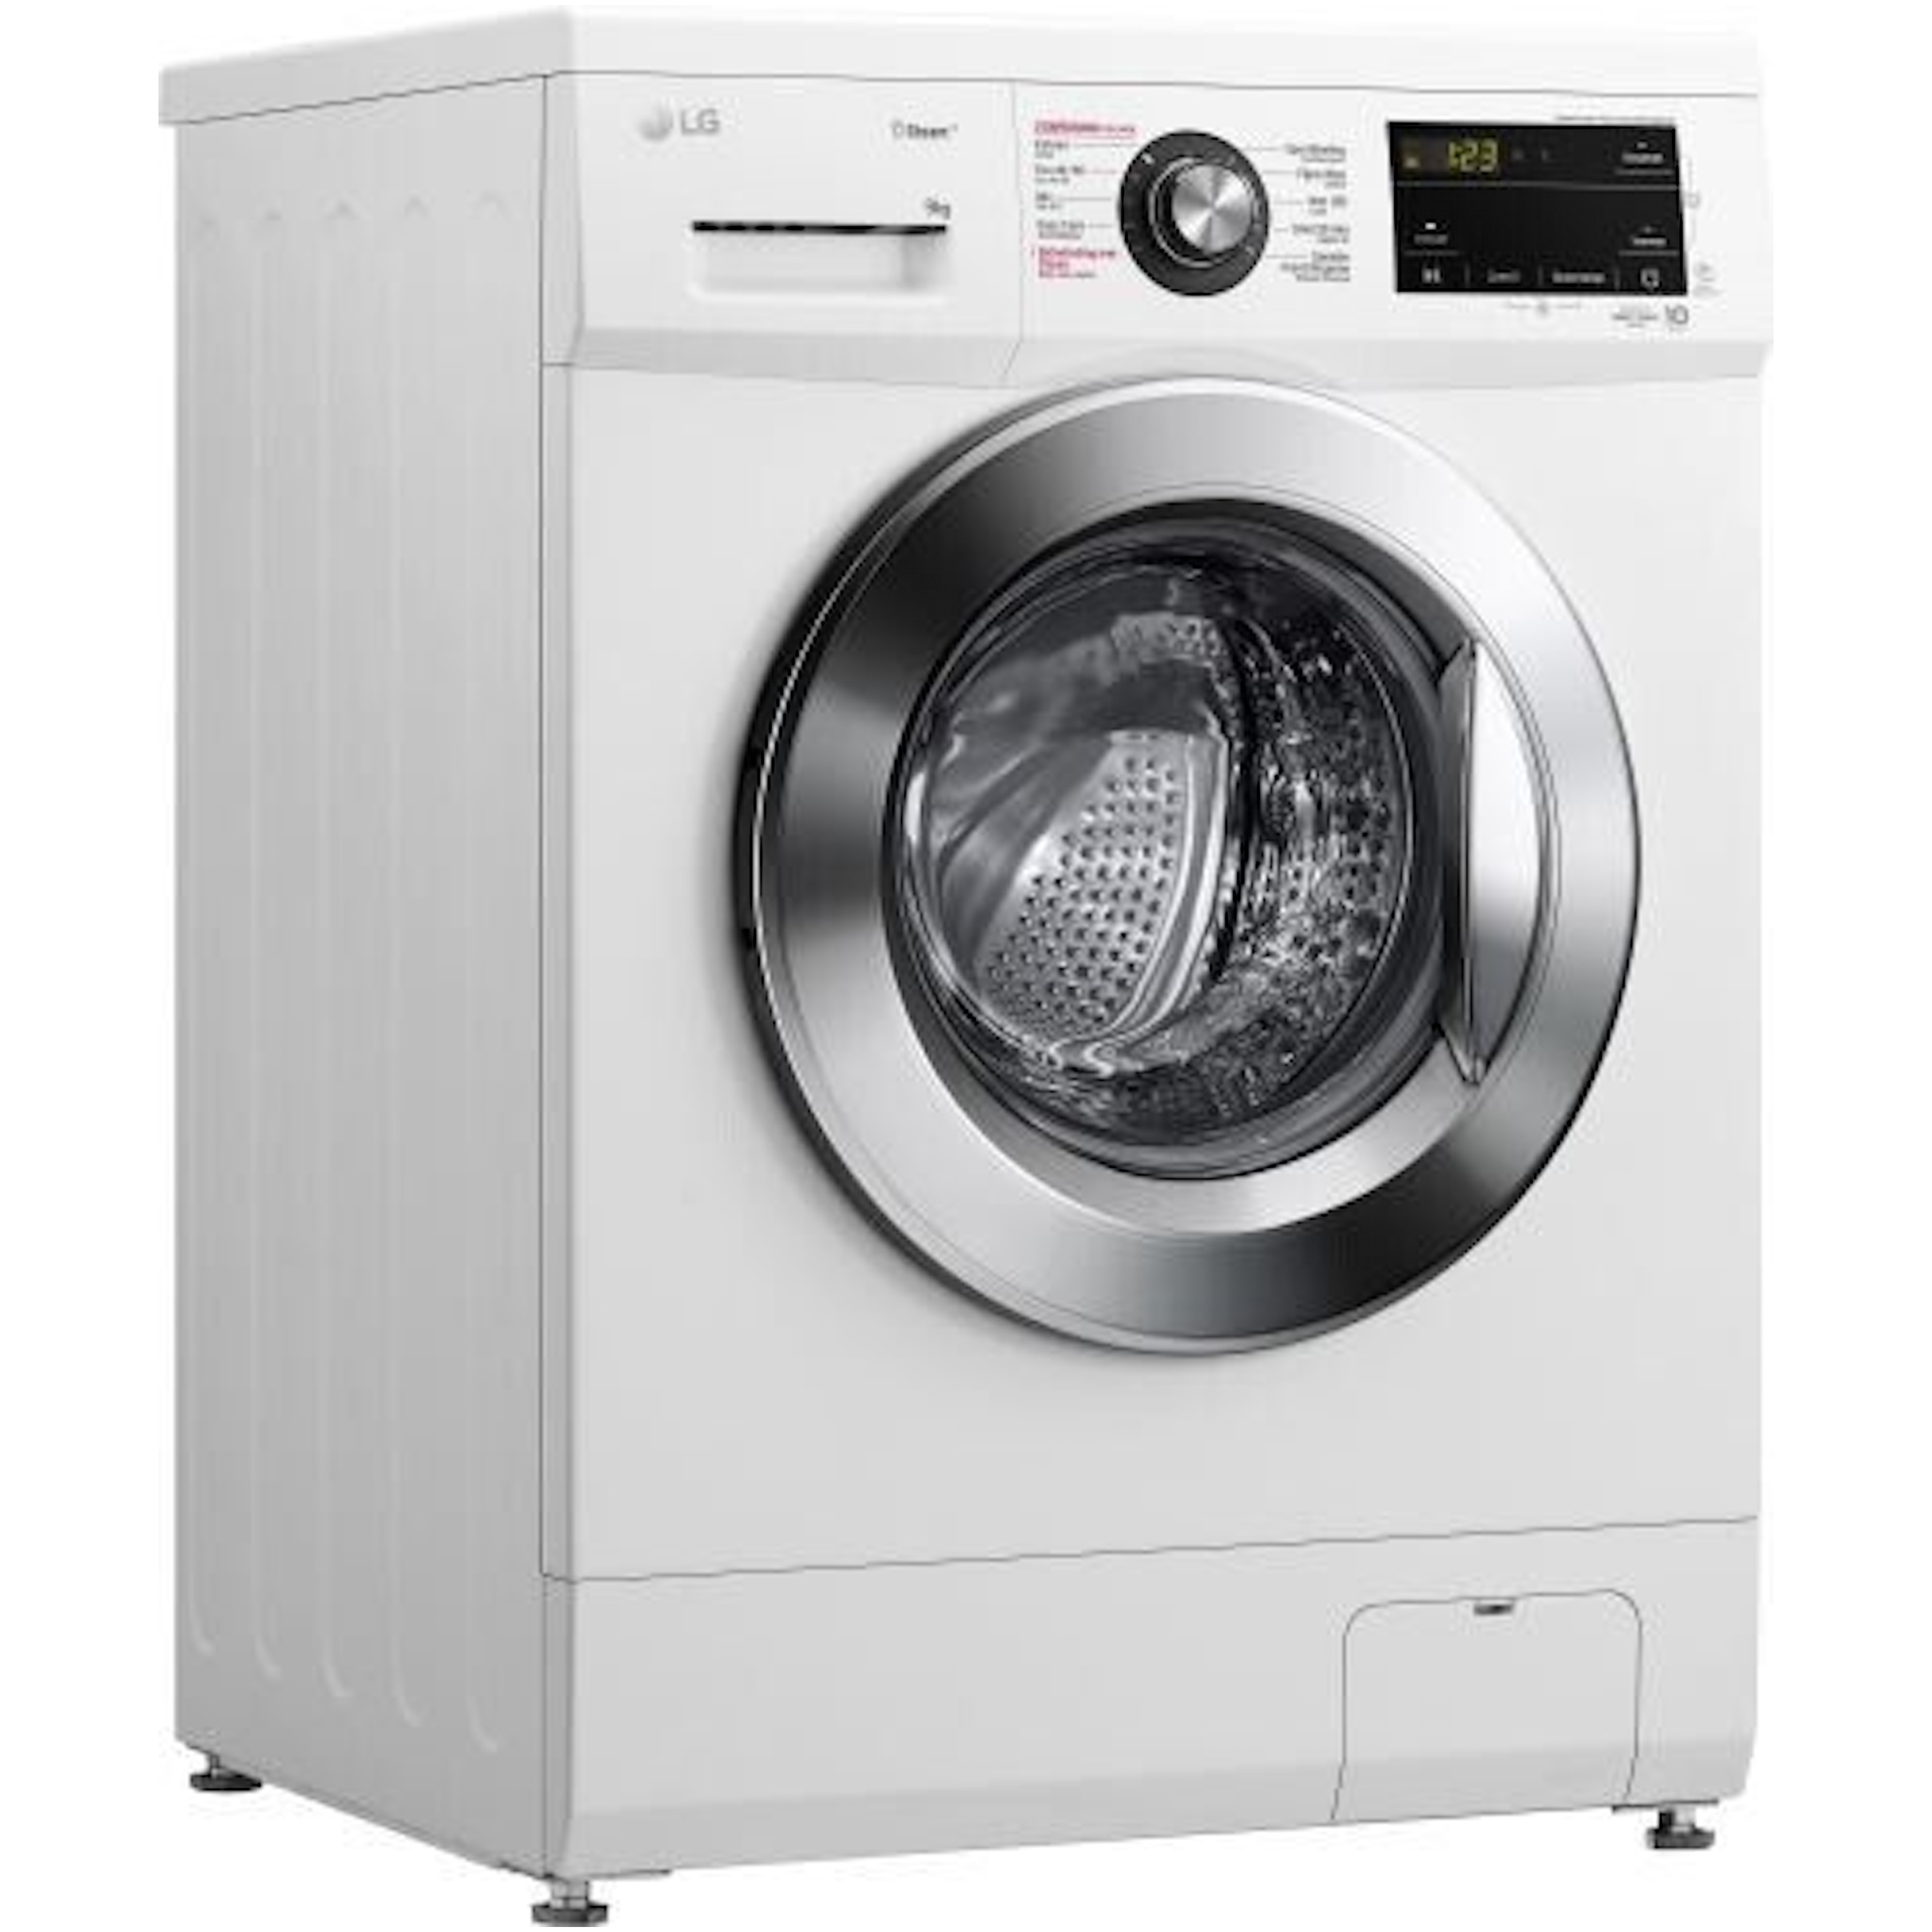 LG wasmachine F4WM309WE afbeelding 3